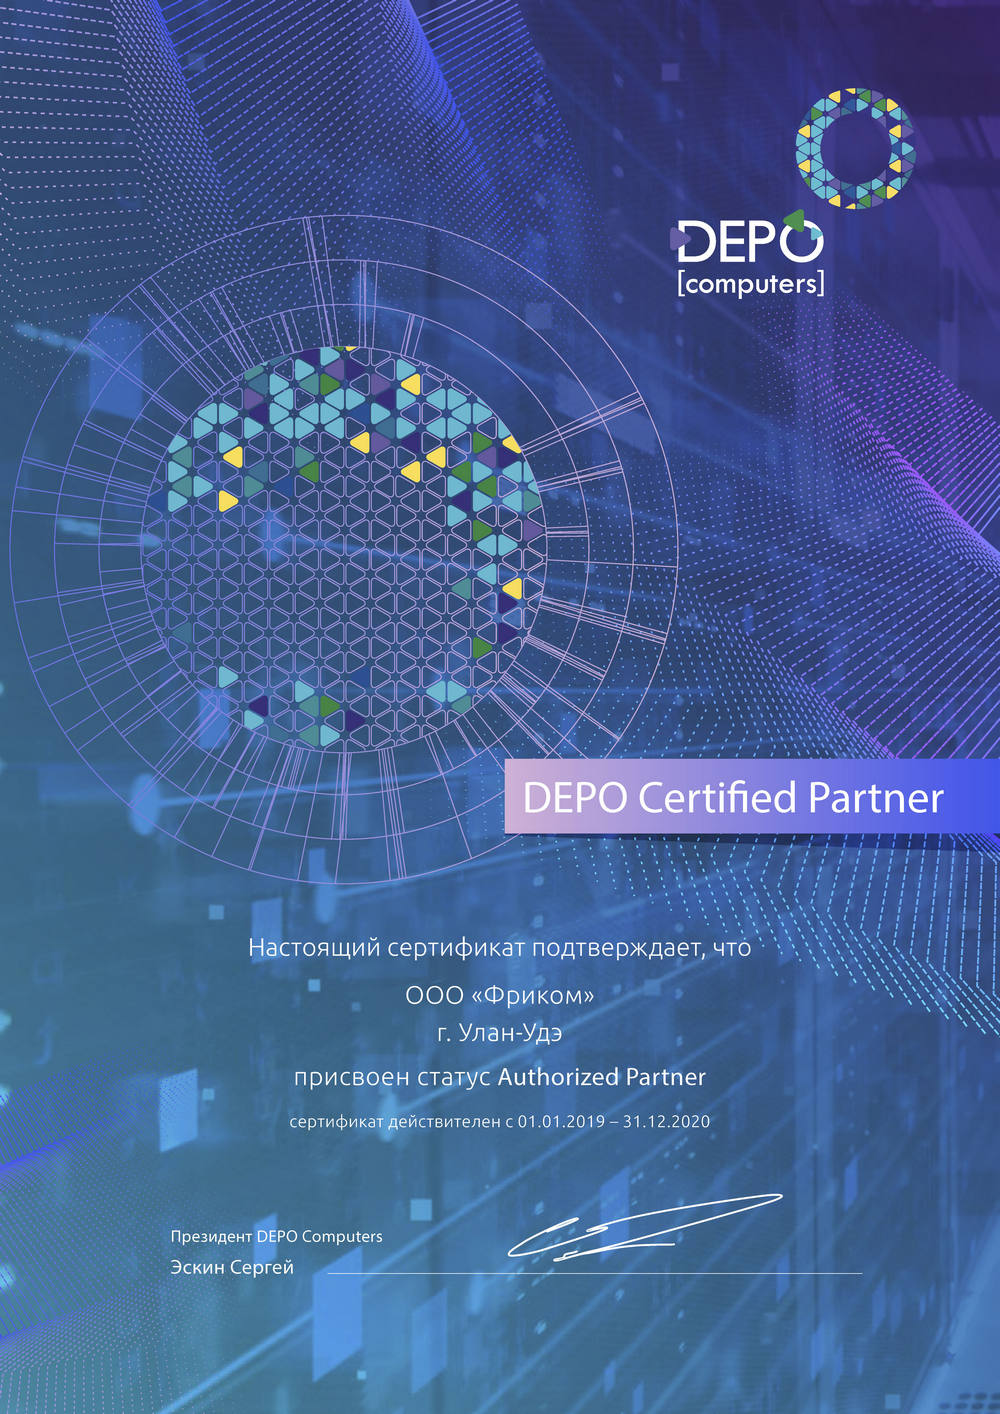 Новые компетенции. Обновлен дилерский сертификат DEPO Computers